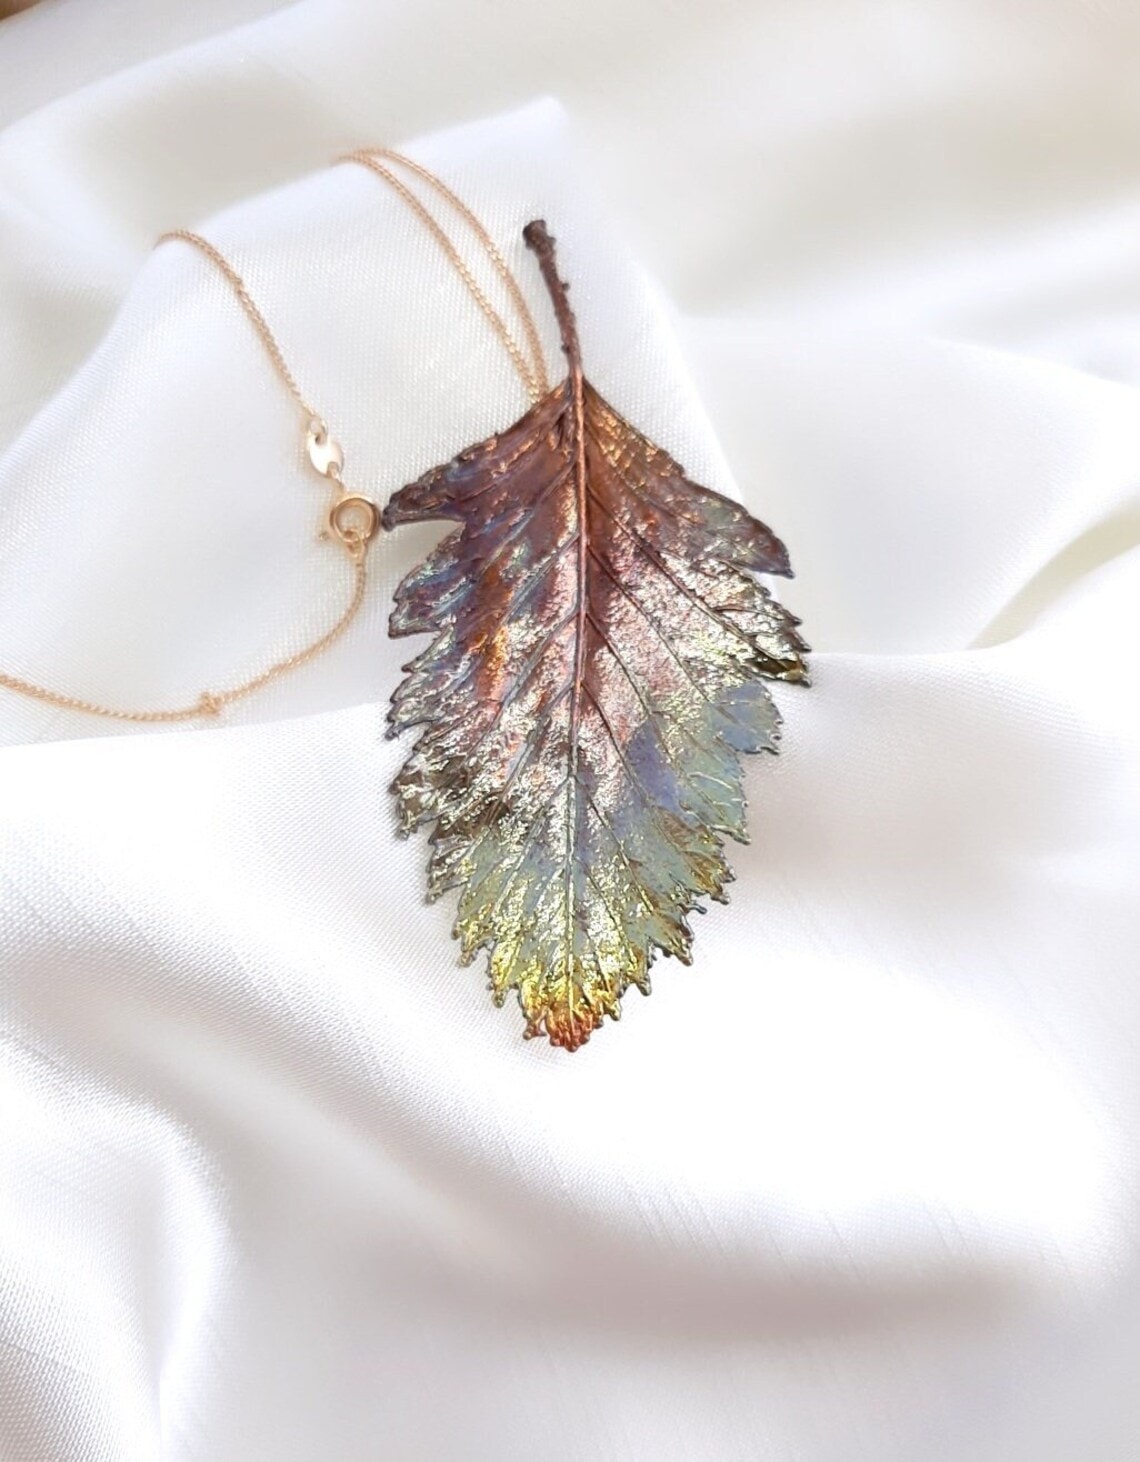 Electroformed leaf pendant